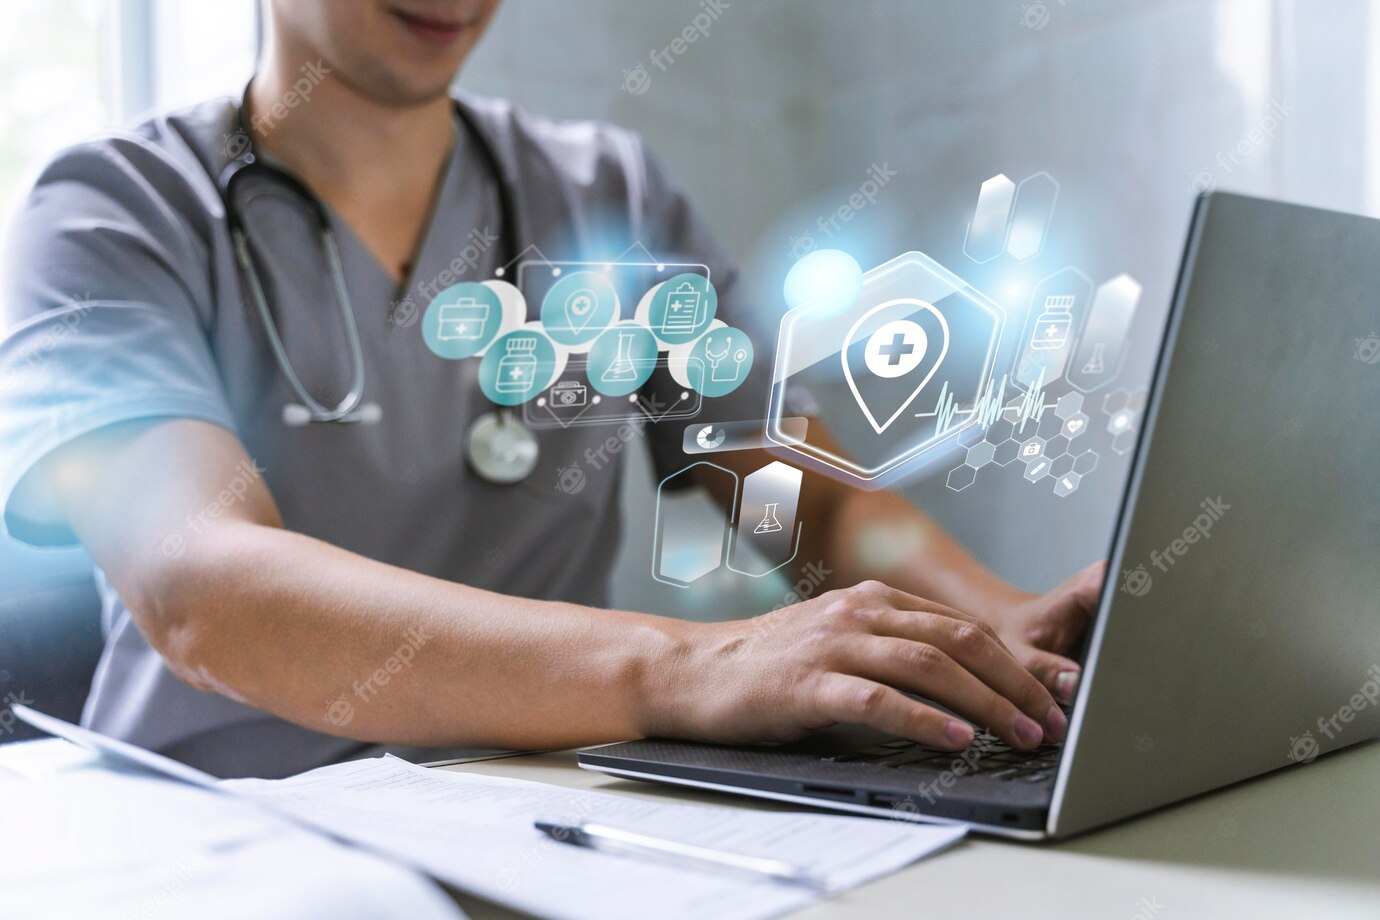 Интернет вещей в здравоохранении: революция в медицинской диагностике и лечении